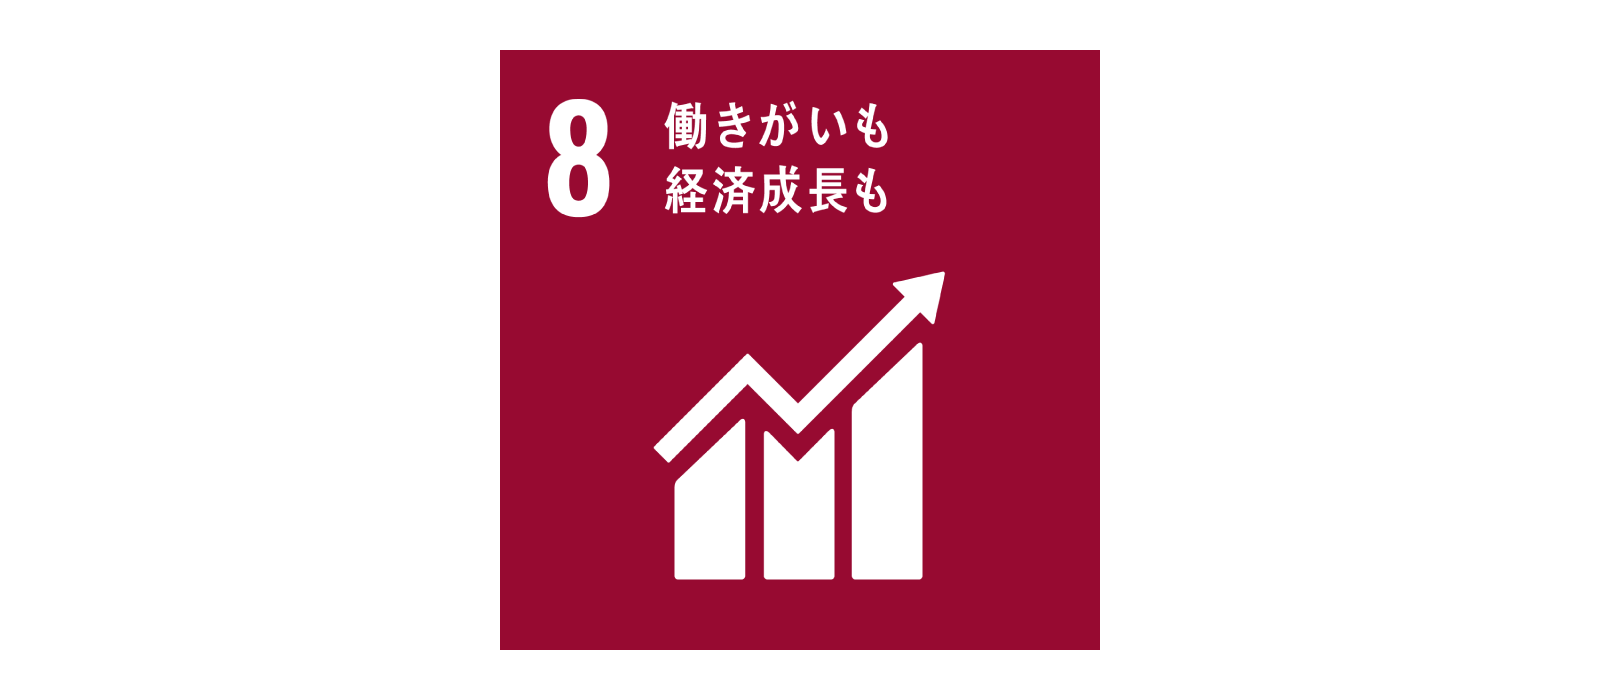 SDGs 目標8 働きがいも経済成長も